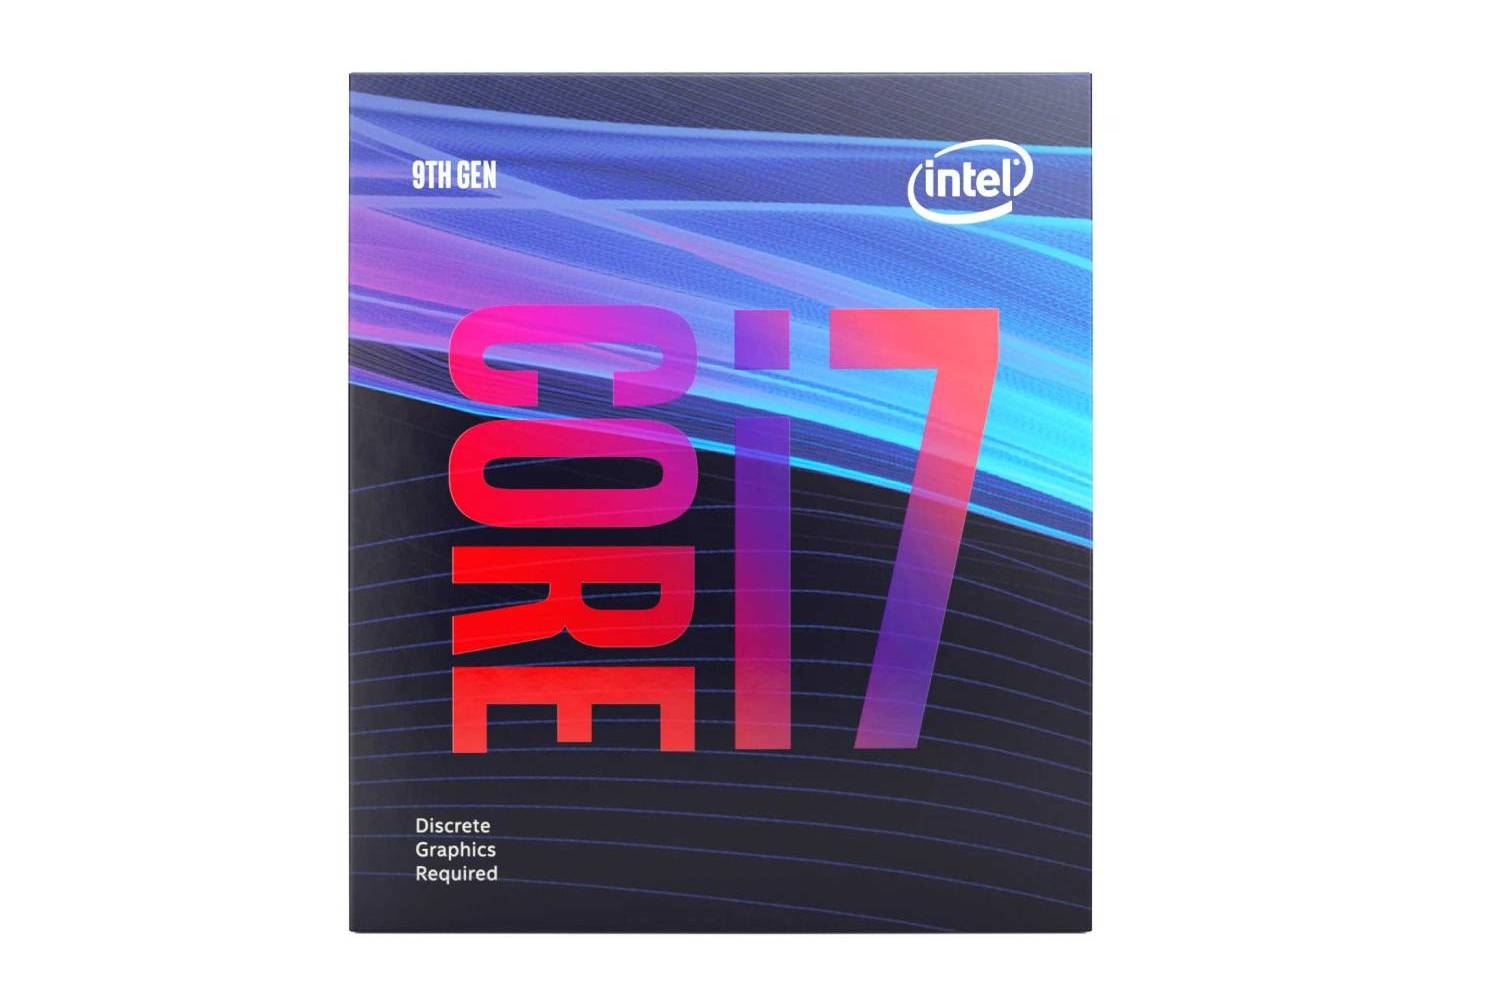 Intel Core i7 9700f Desktop 9th Generation Processor